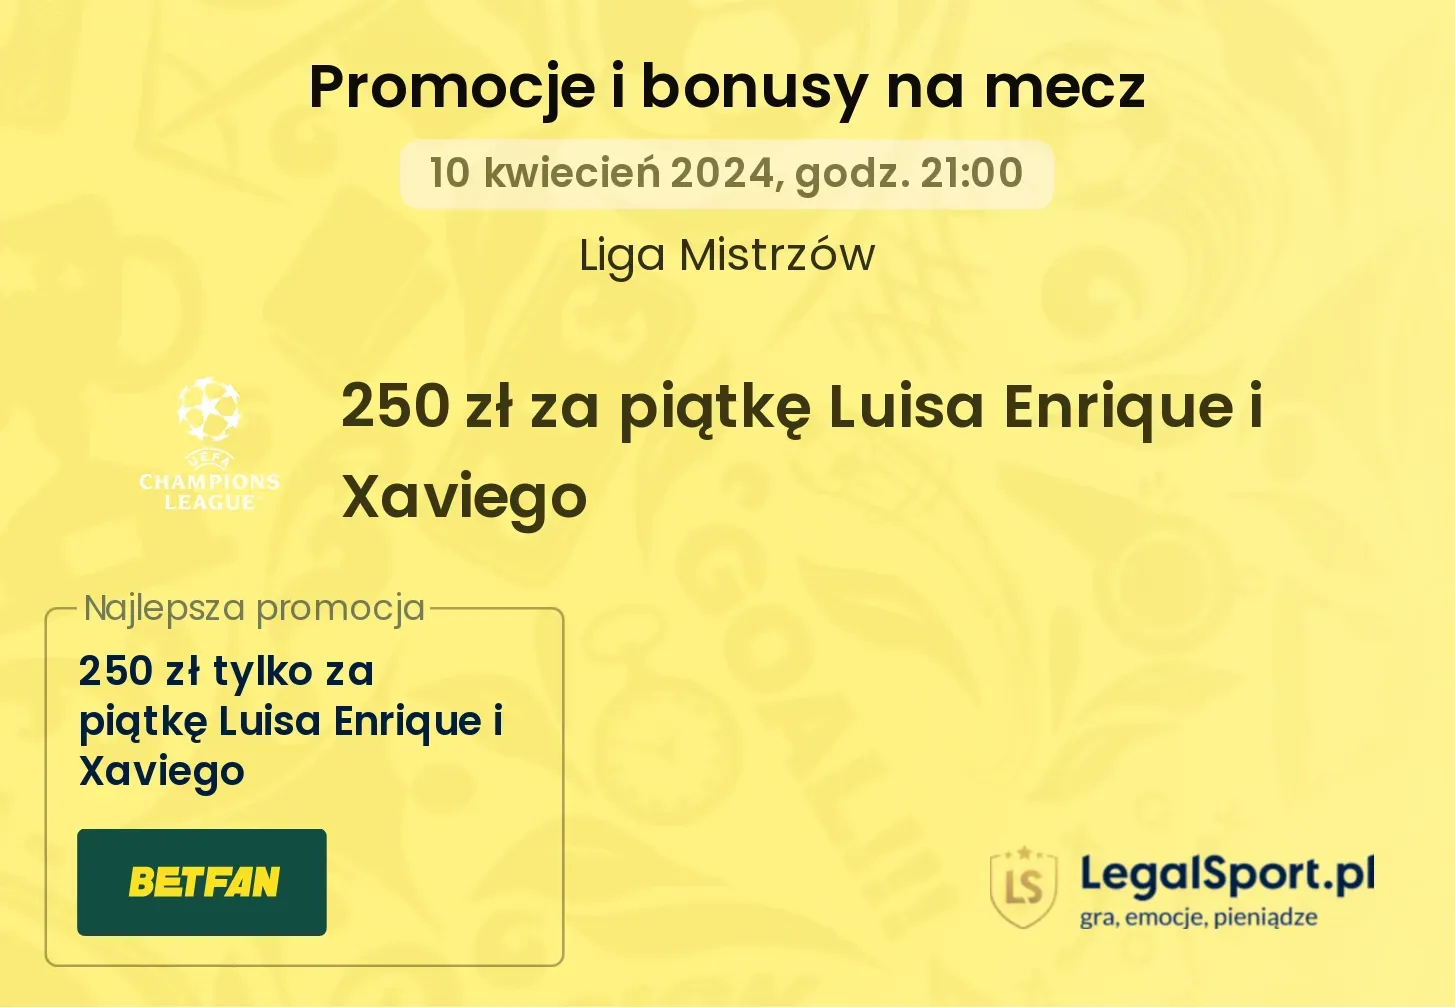 250 zł za piątkę Luisa Enrique i Xaviego promocje bonusy na mecz